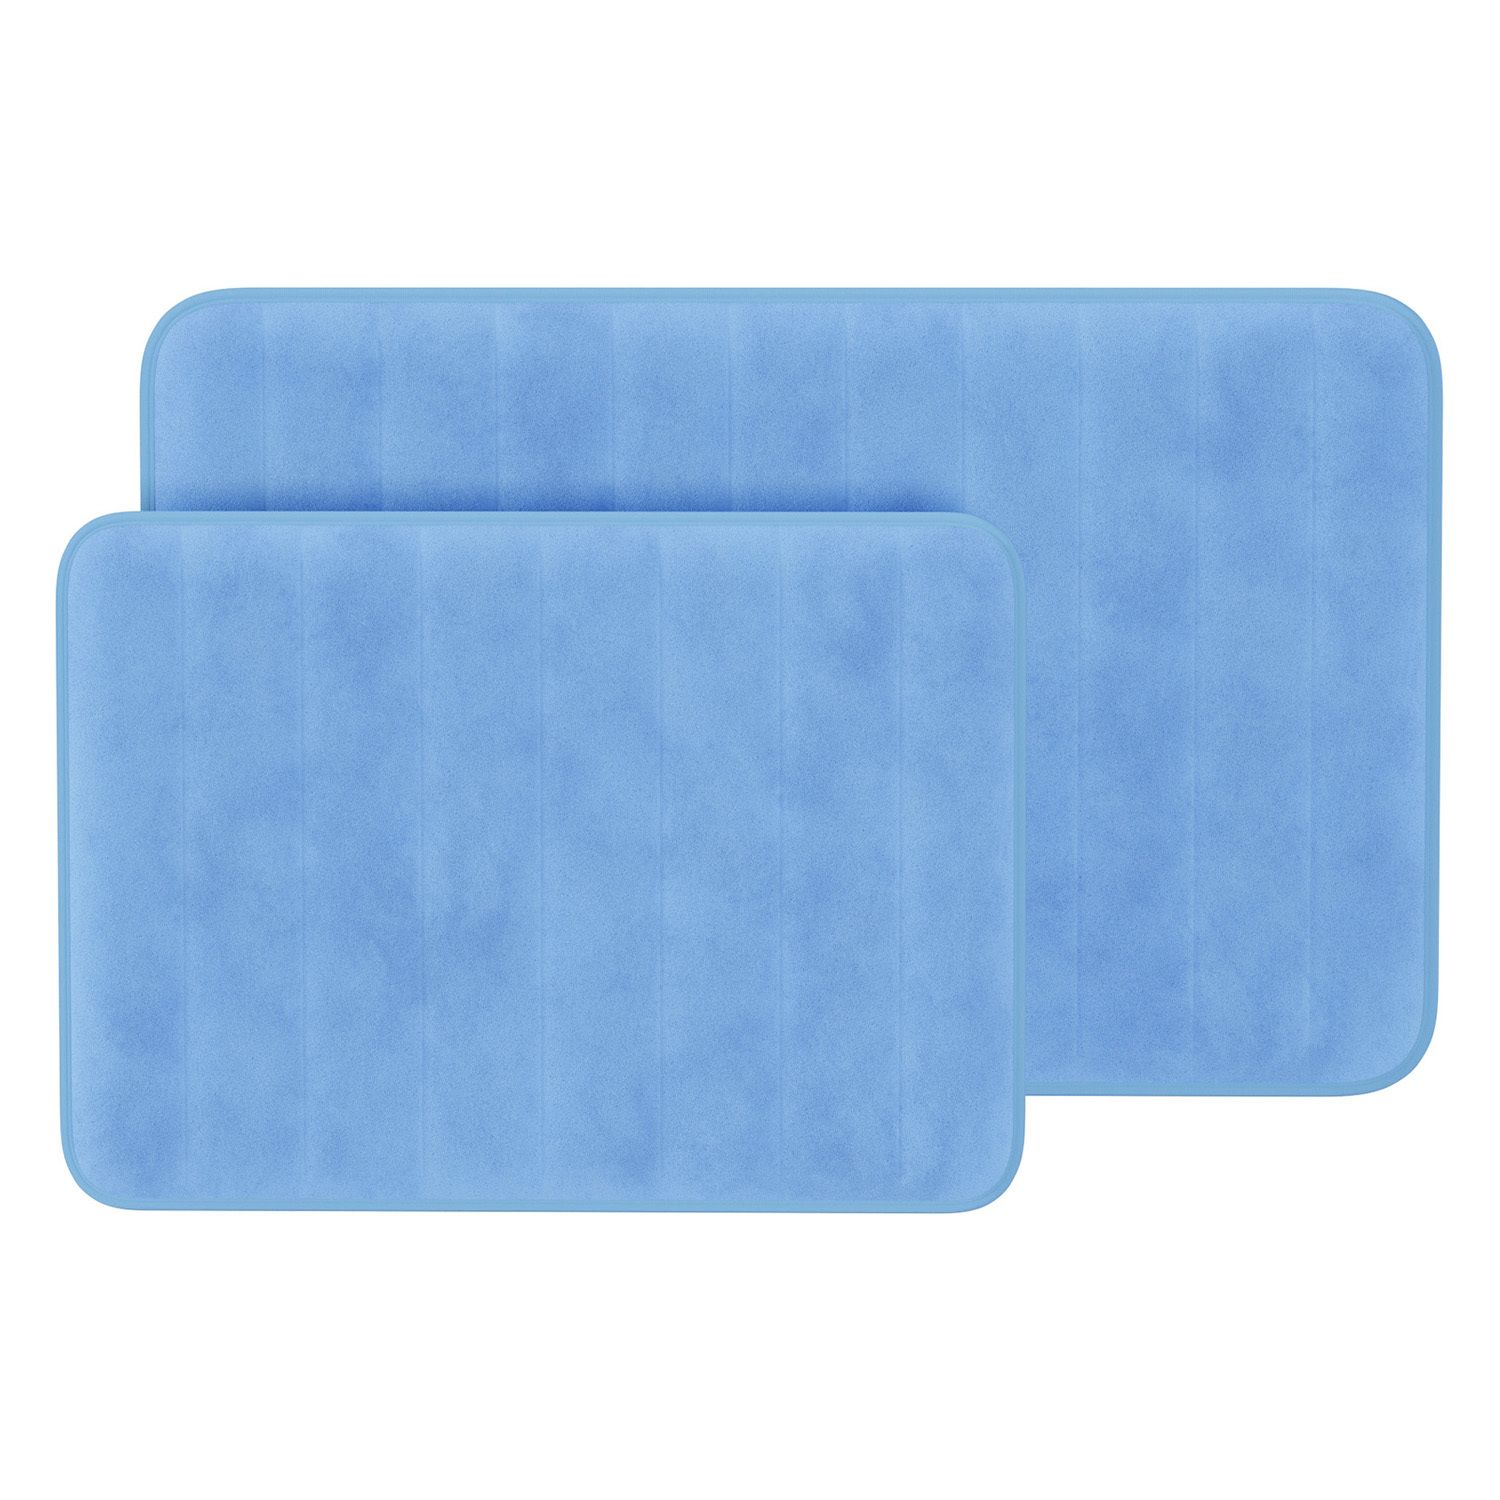 blue bath mat set